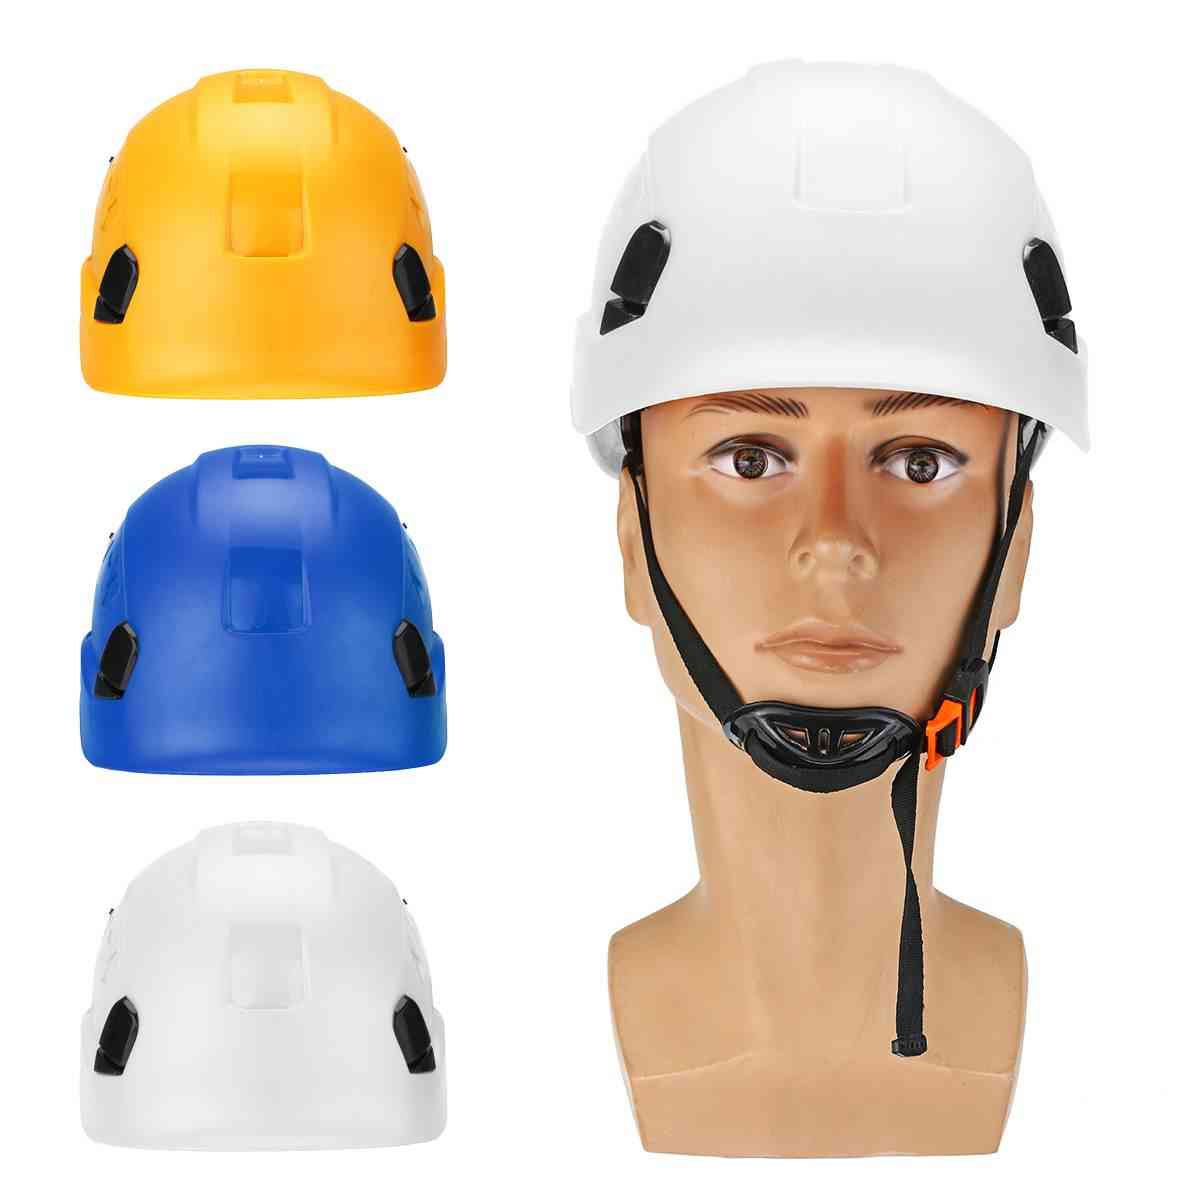 Construction de casque de sécurité, escalade, protection contre le steeplejack, casque de sécurité